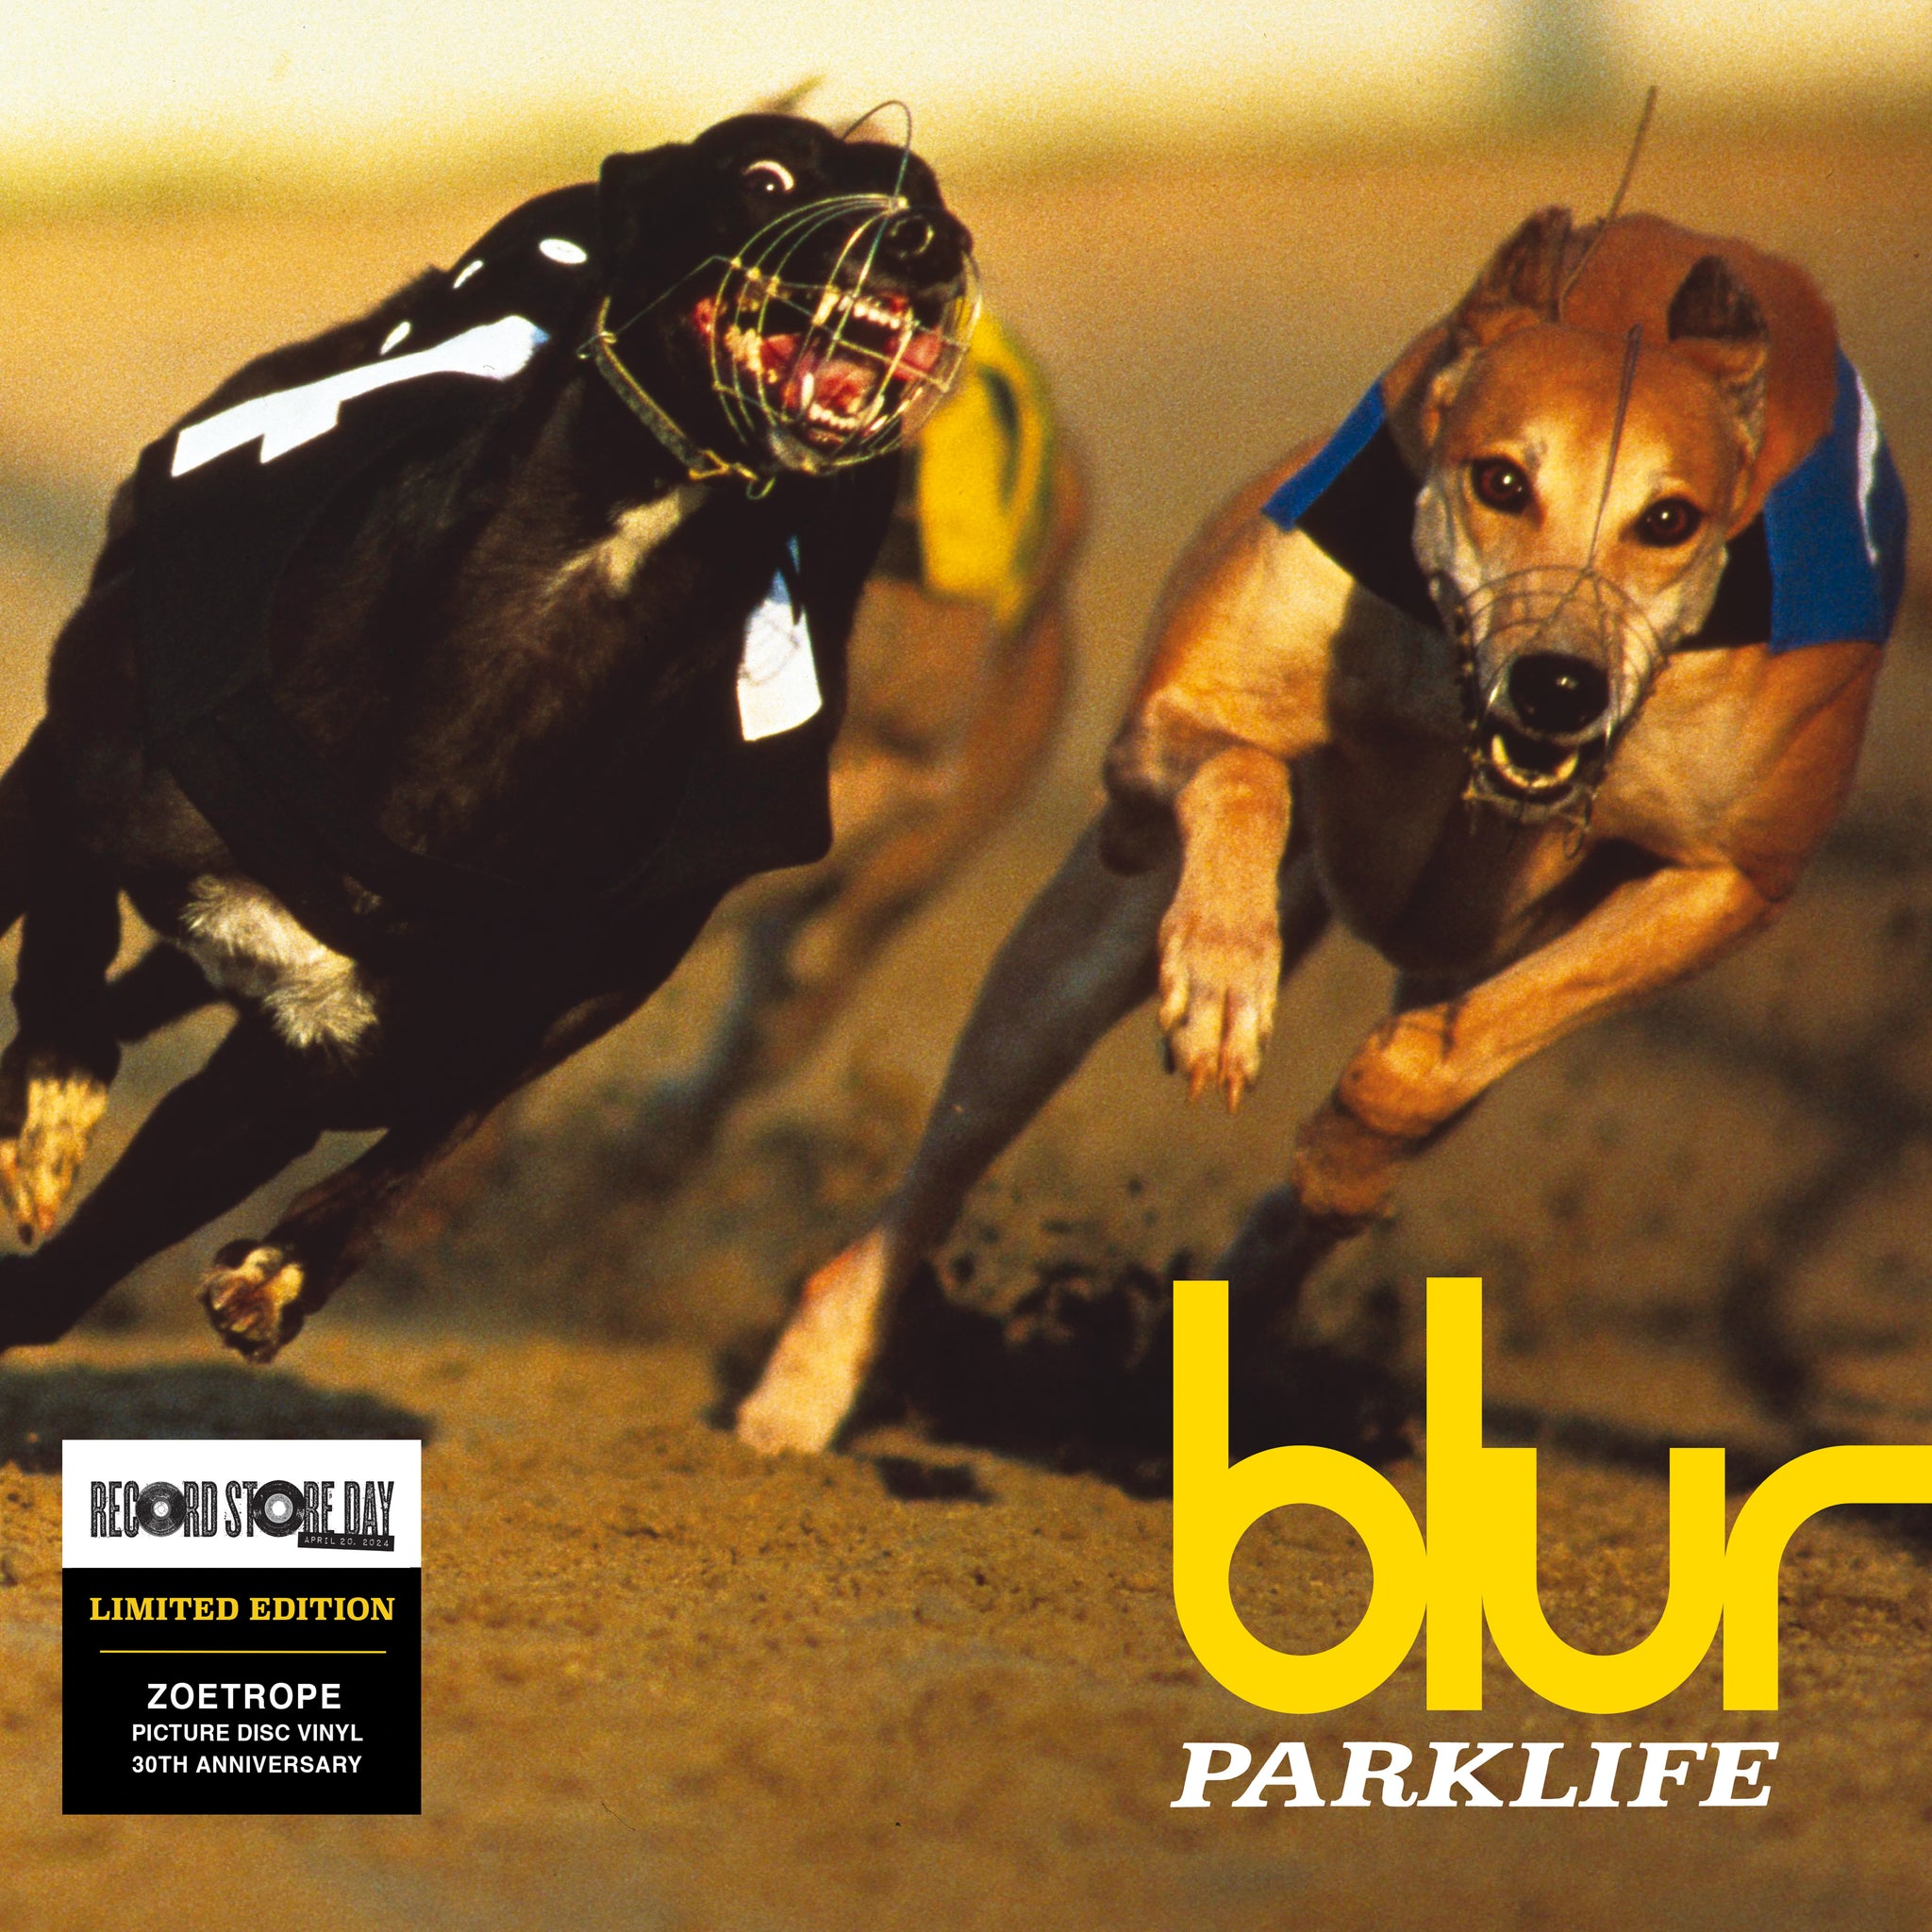 BLUR - Parlklife (Zoetrope LP) - 1 LP - Zoetrope Picture Disc [RSD 2024]